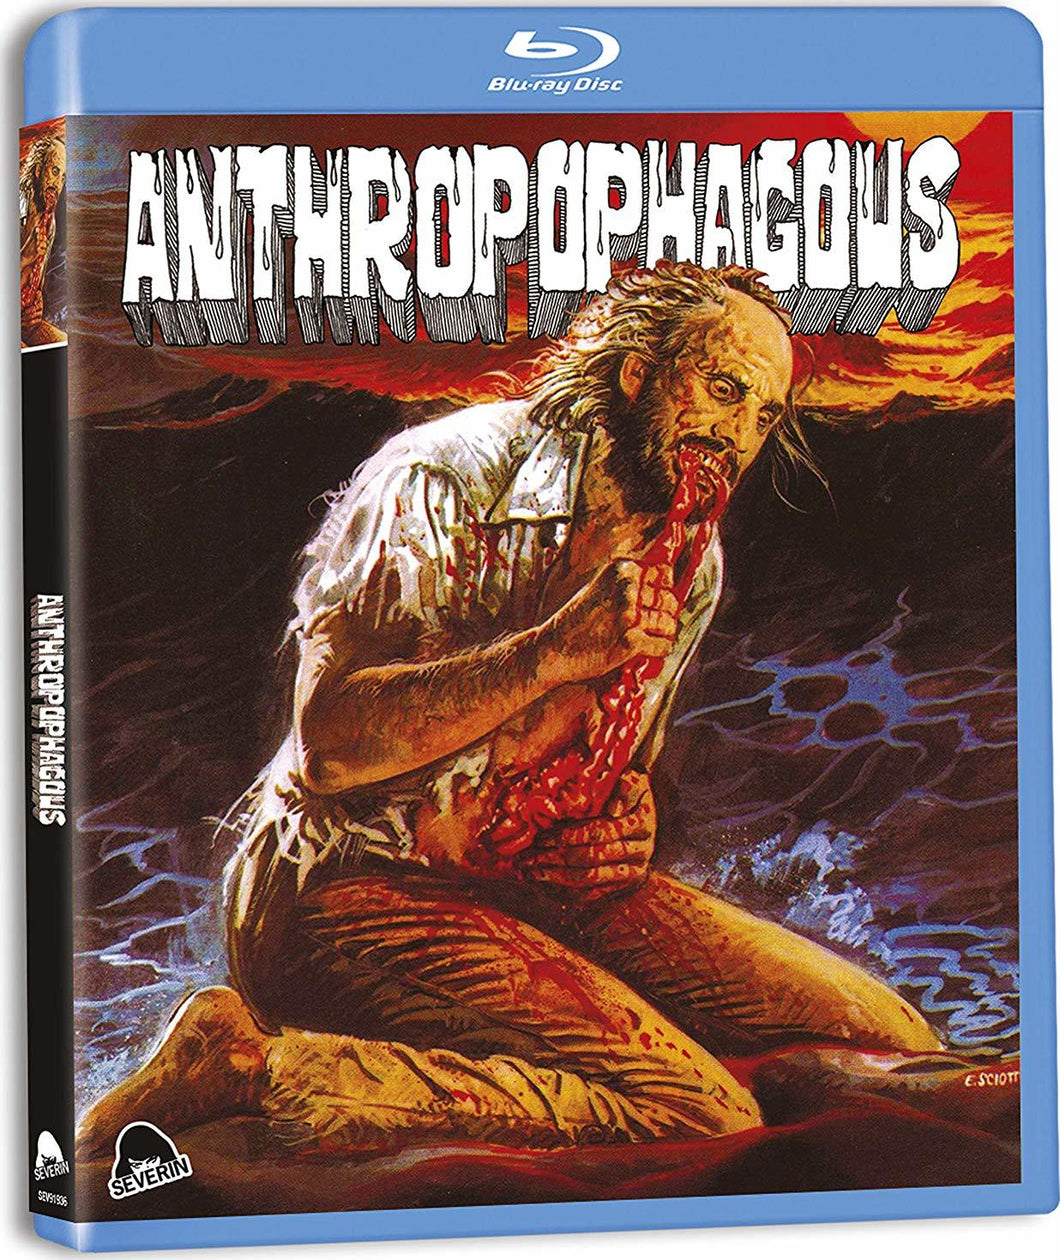 Anthropophagous (1980) de Joe D'Amato - front cover